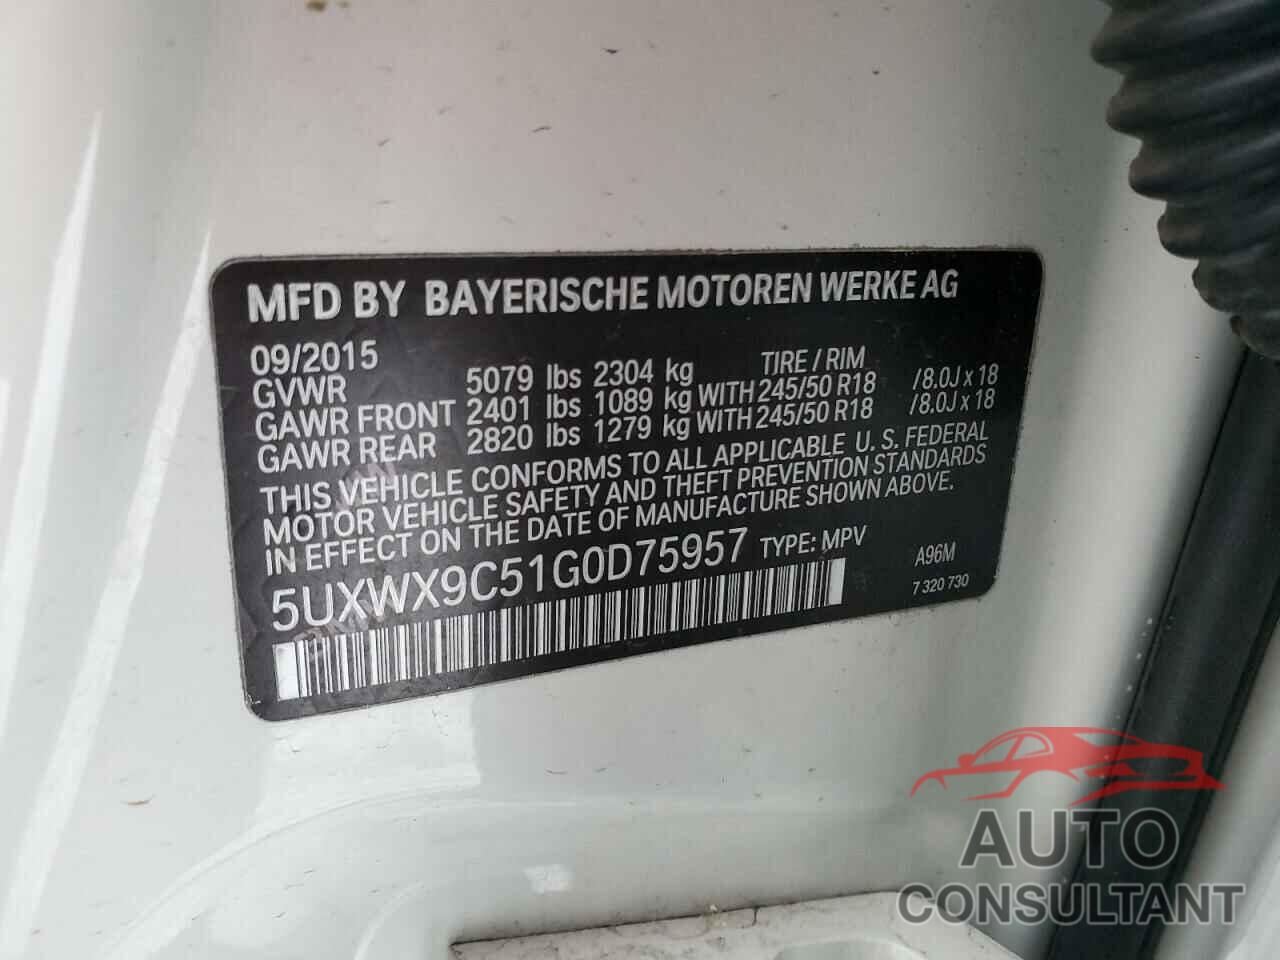 BMW X3 2016 - 5UXWX9C51G0D75957